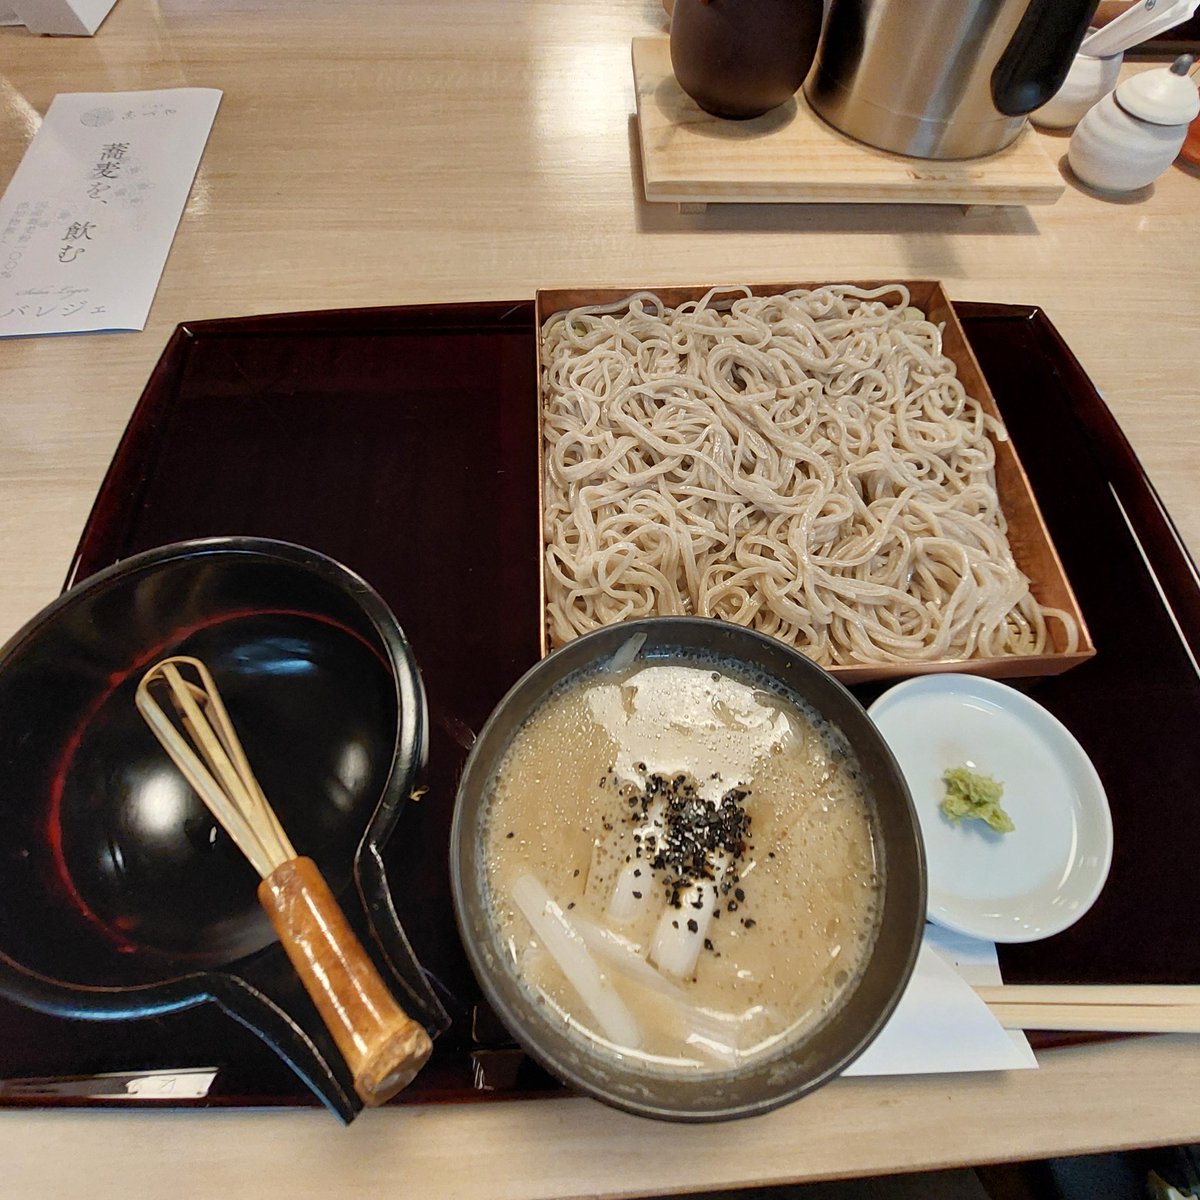 木曜日のお昼に行ったお蕎麦やさんの鴨せいろ、美味しかった😋
志づやさんです。場所は上野